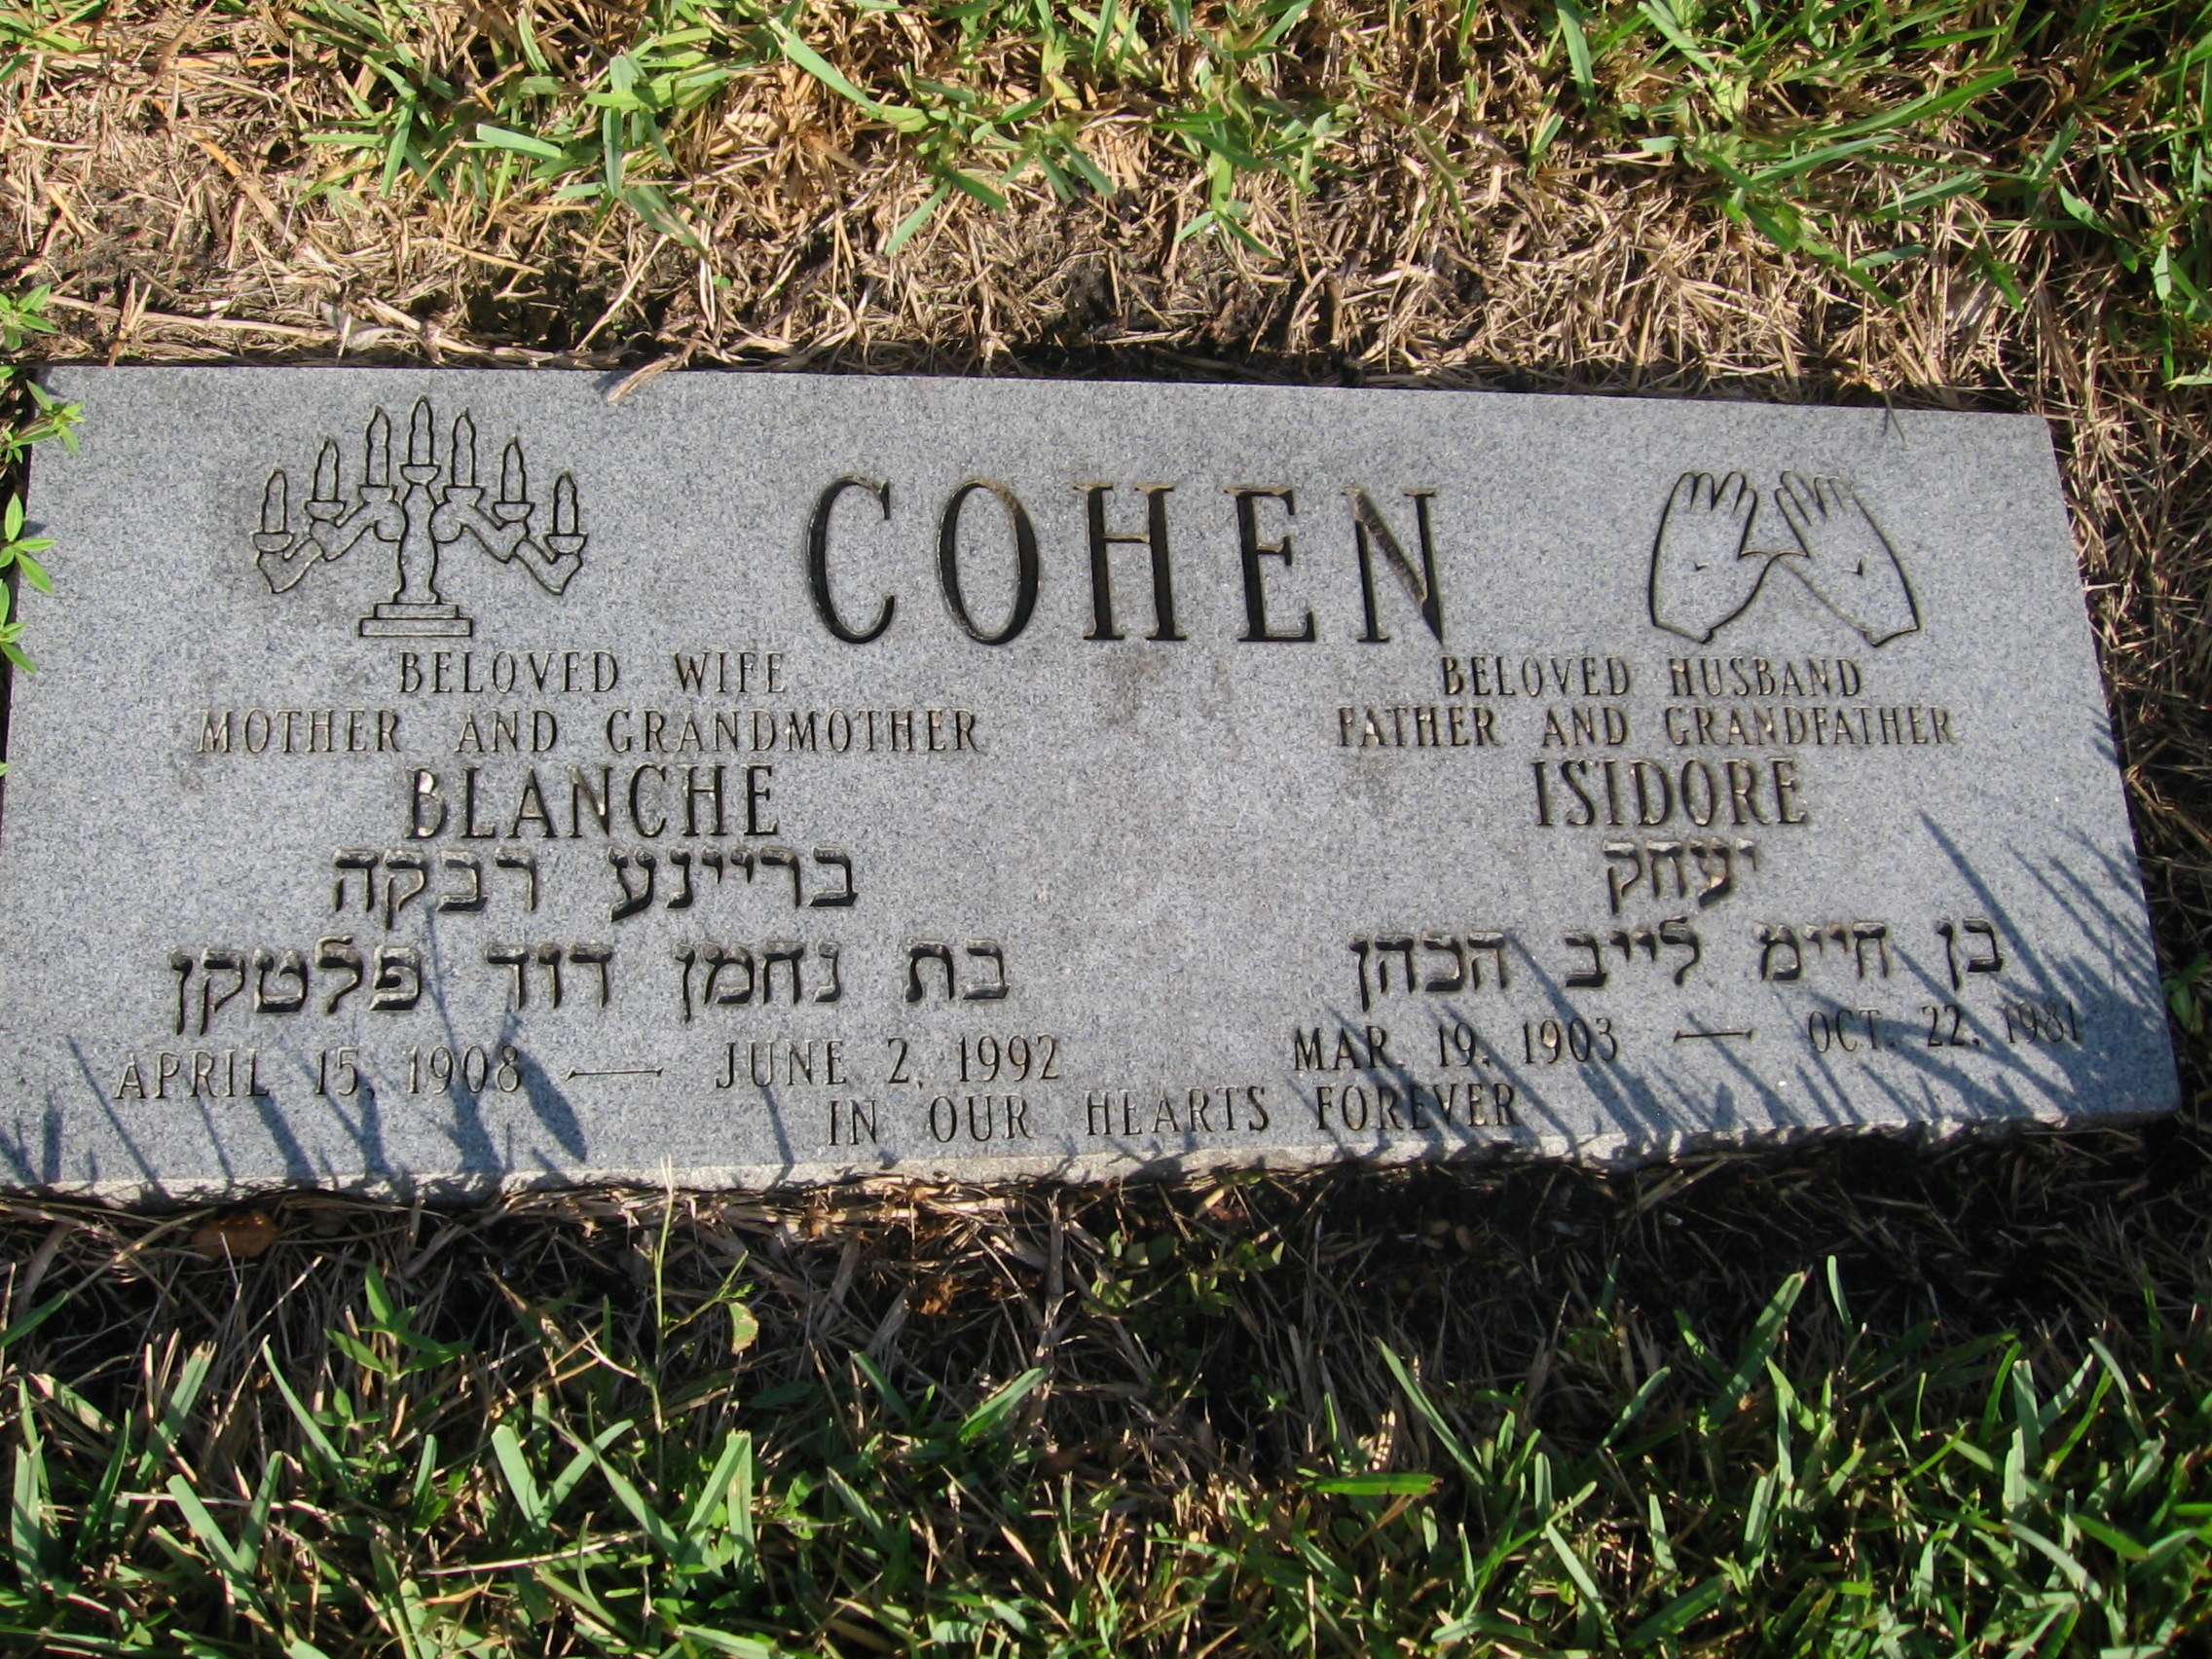 Blanche Cohen